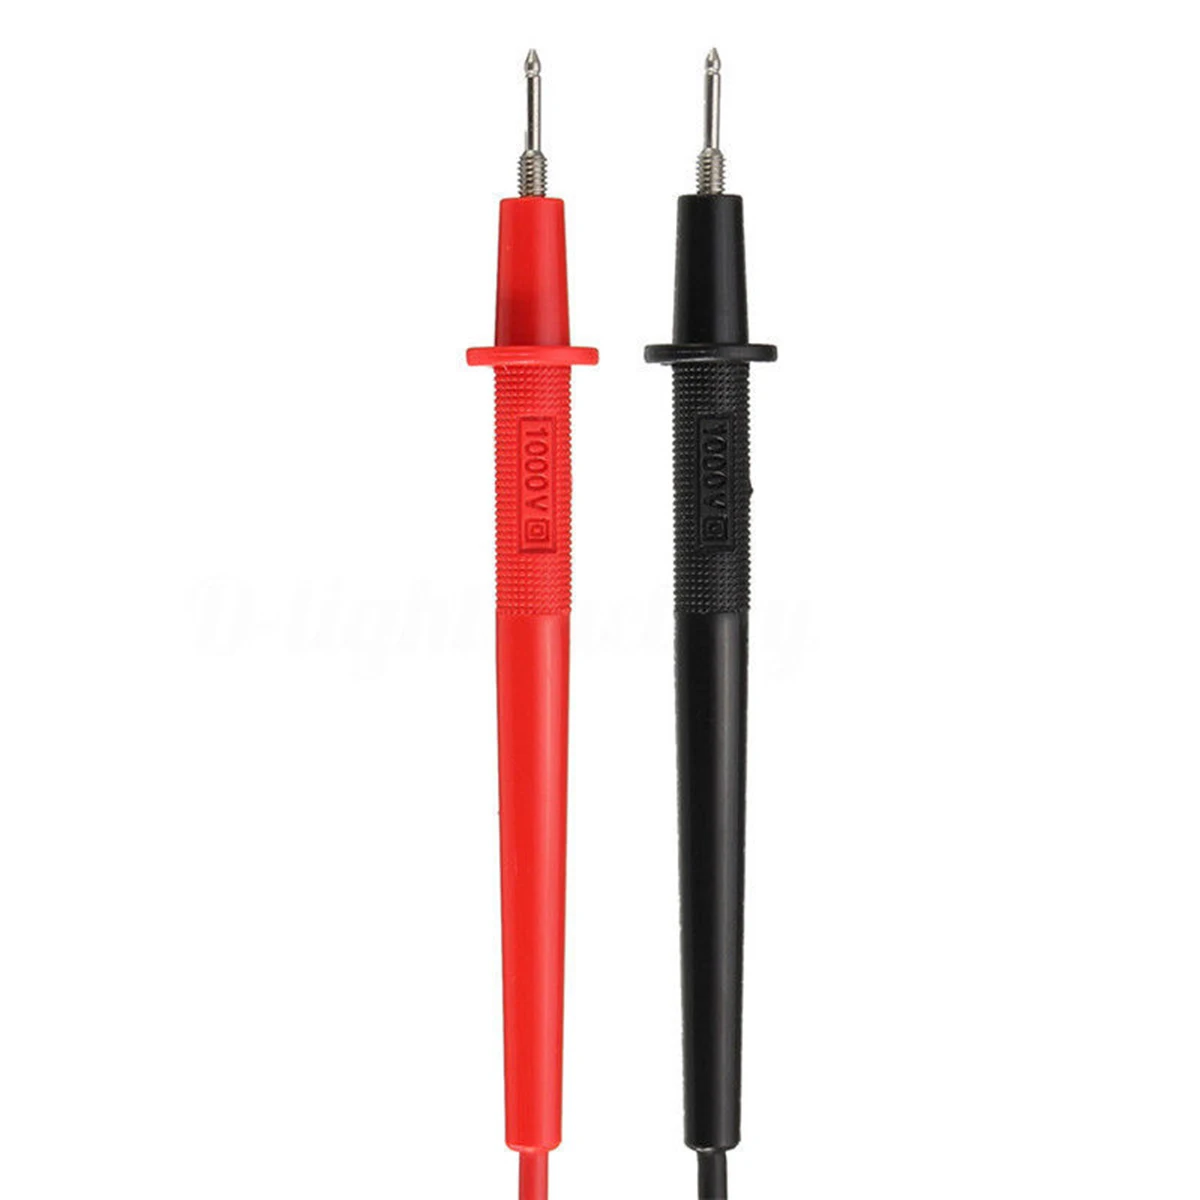 KT8260LDigital Analog Multimeter ACV/DCV/DCA/Electric Resistance Tester  + 2pcs Test Pen For Measurment Tools